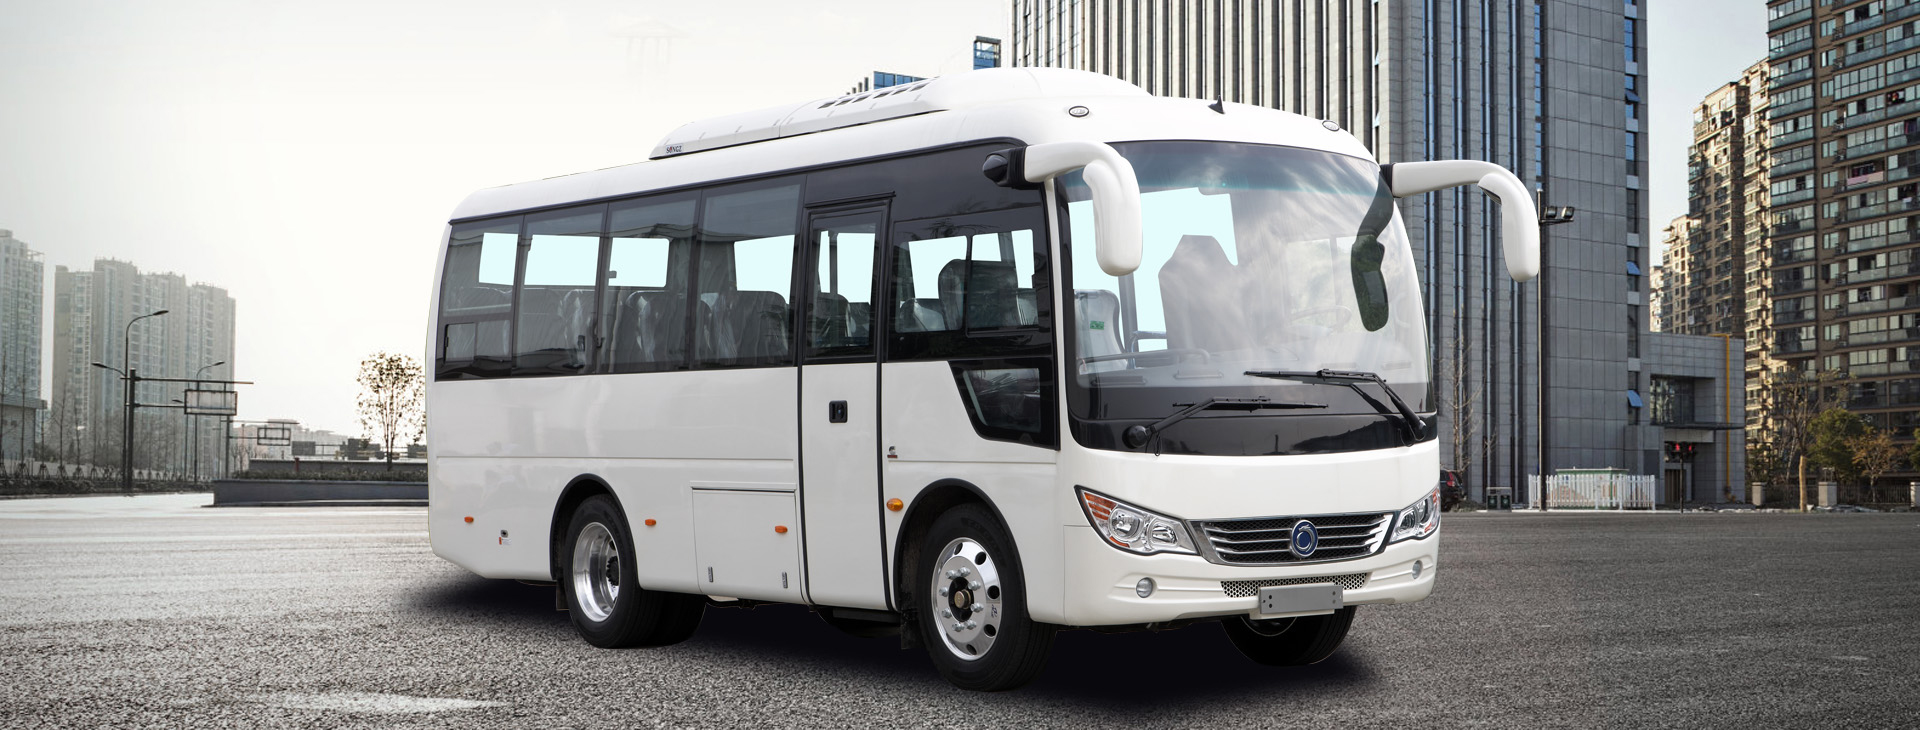 SLK6750 Medium Bus